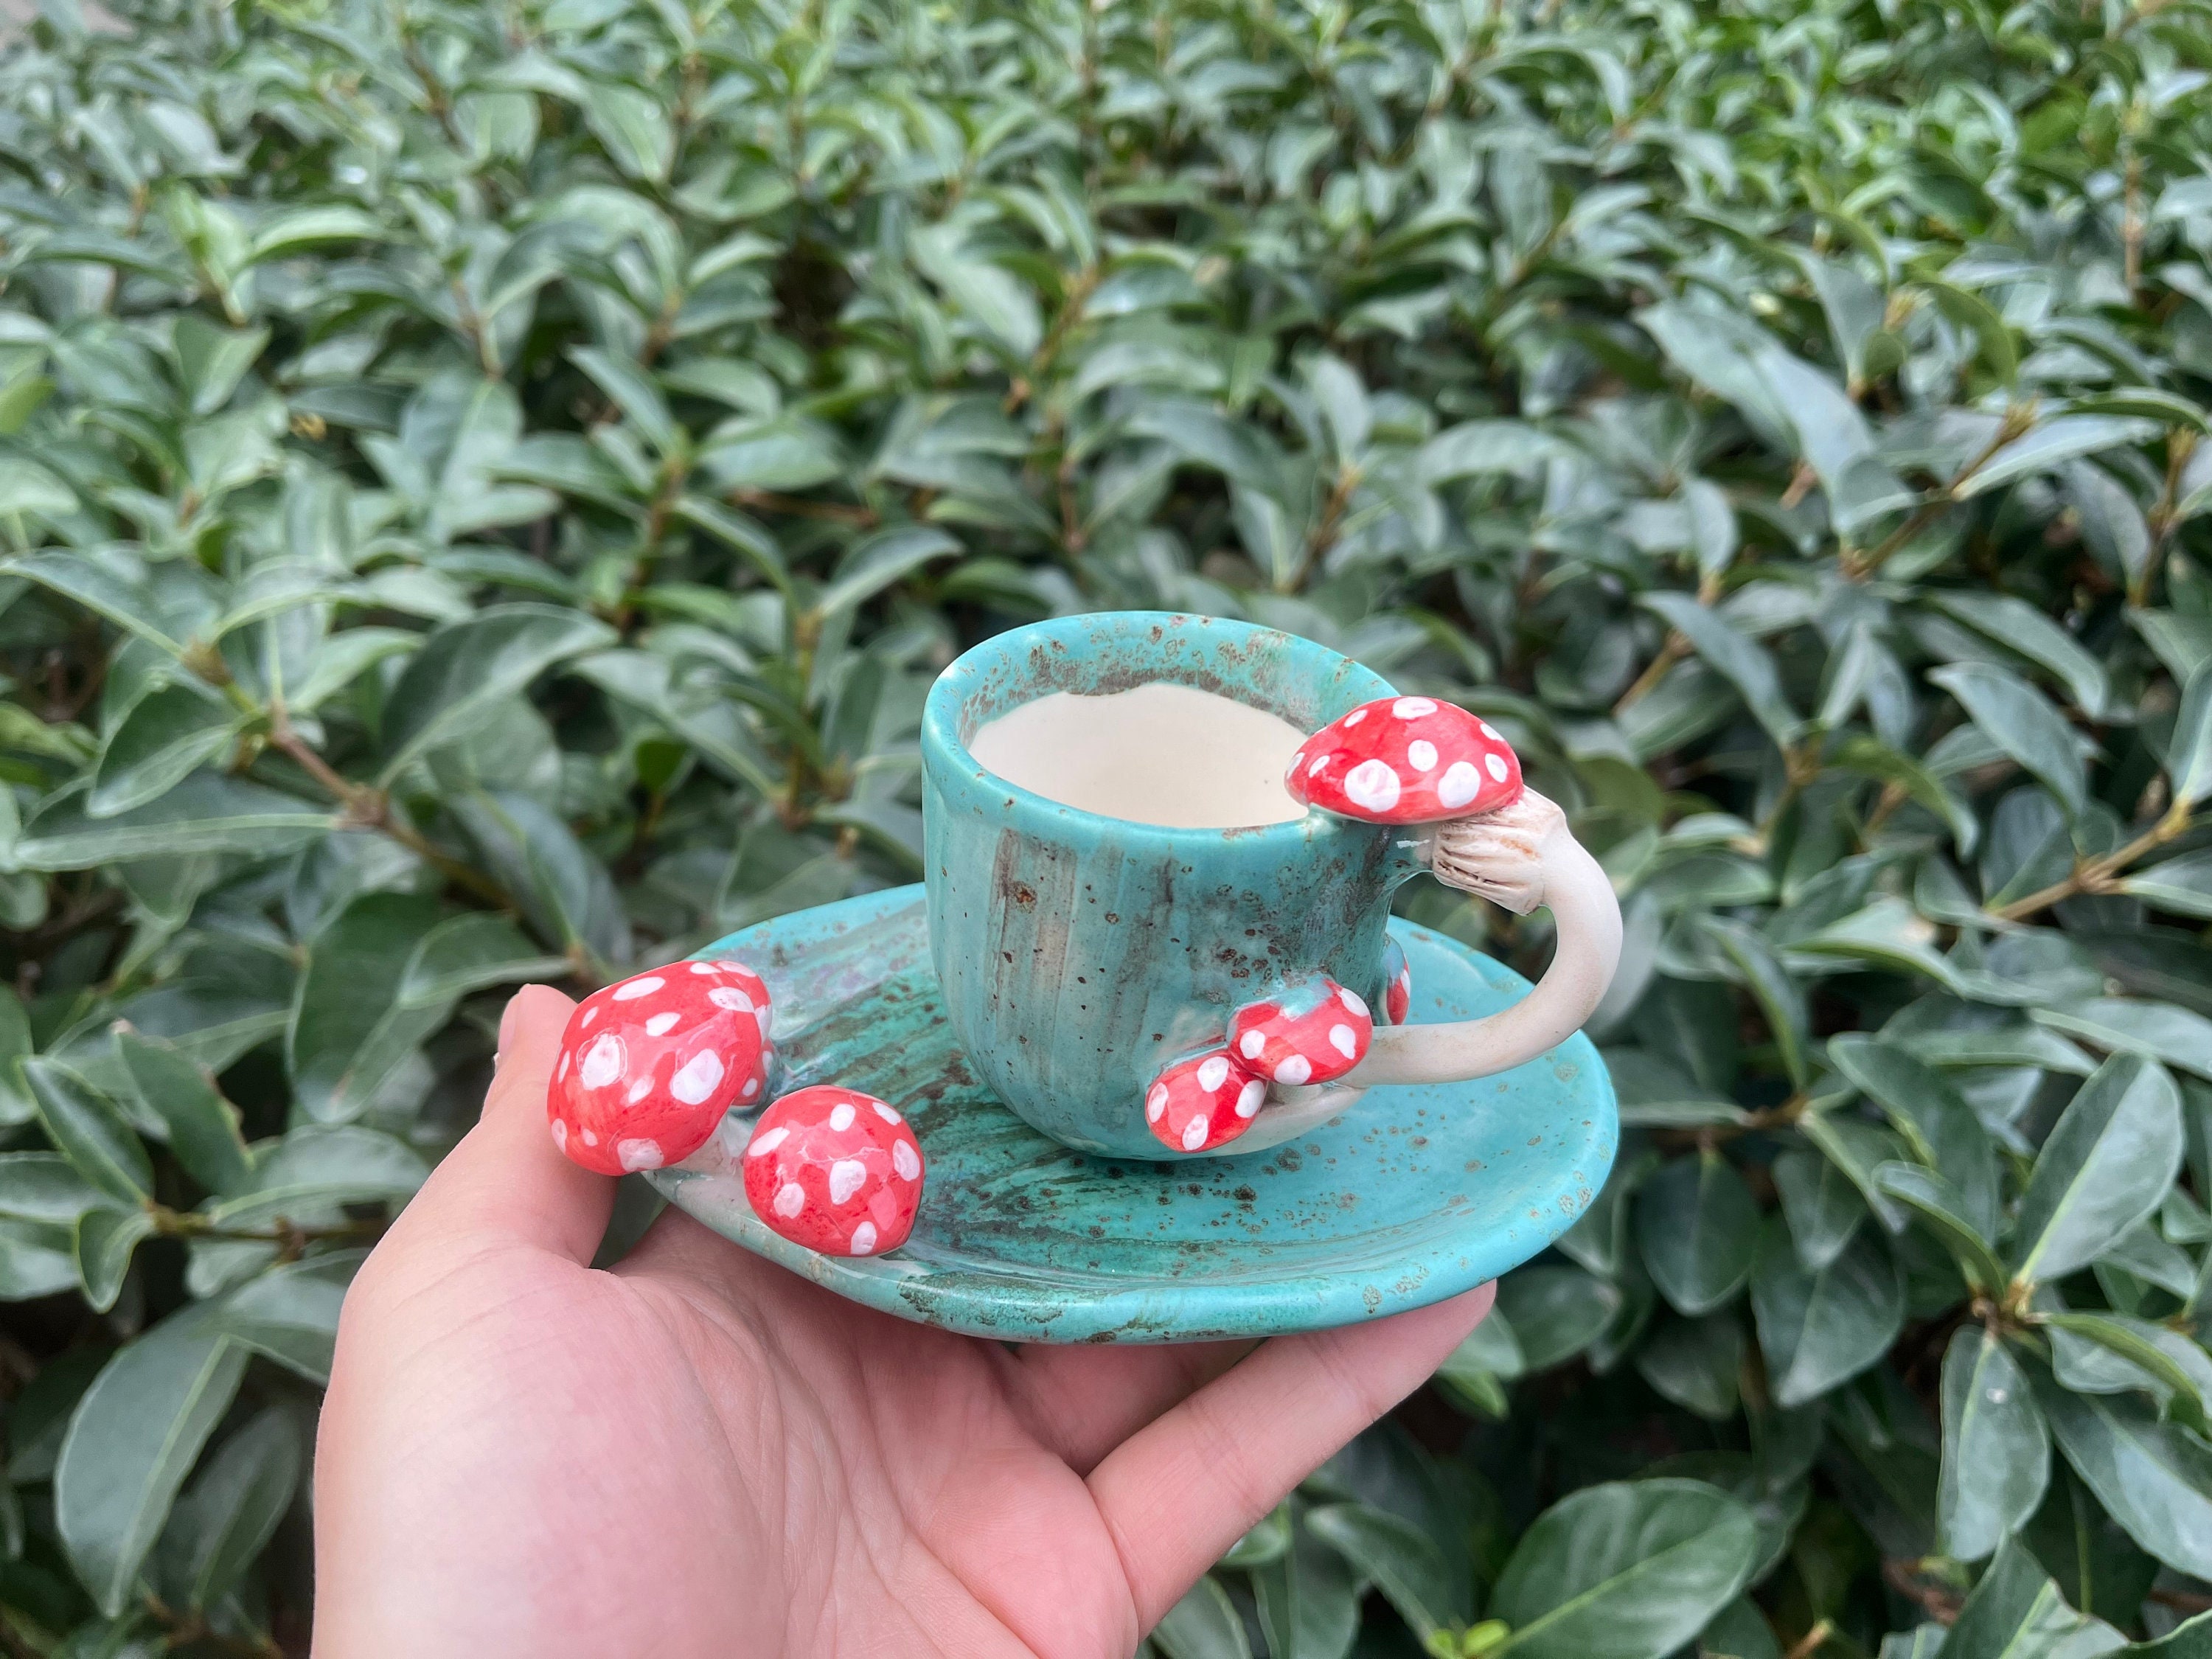 290ml Mushroom Glass Coffee Mug With Ceramic Cup Holder Reheatable Milk Cup  Afternoon Flower Tea Cu